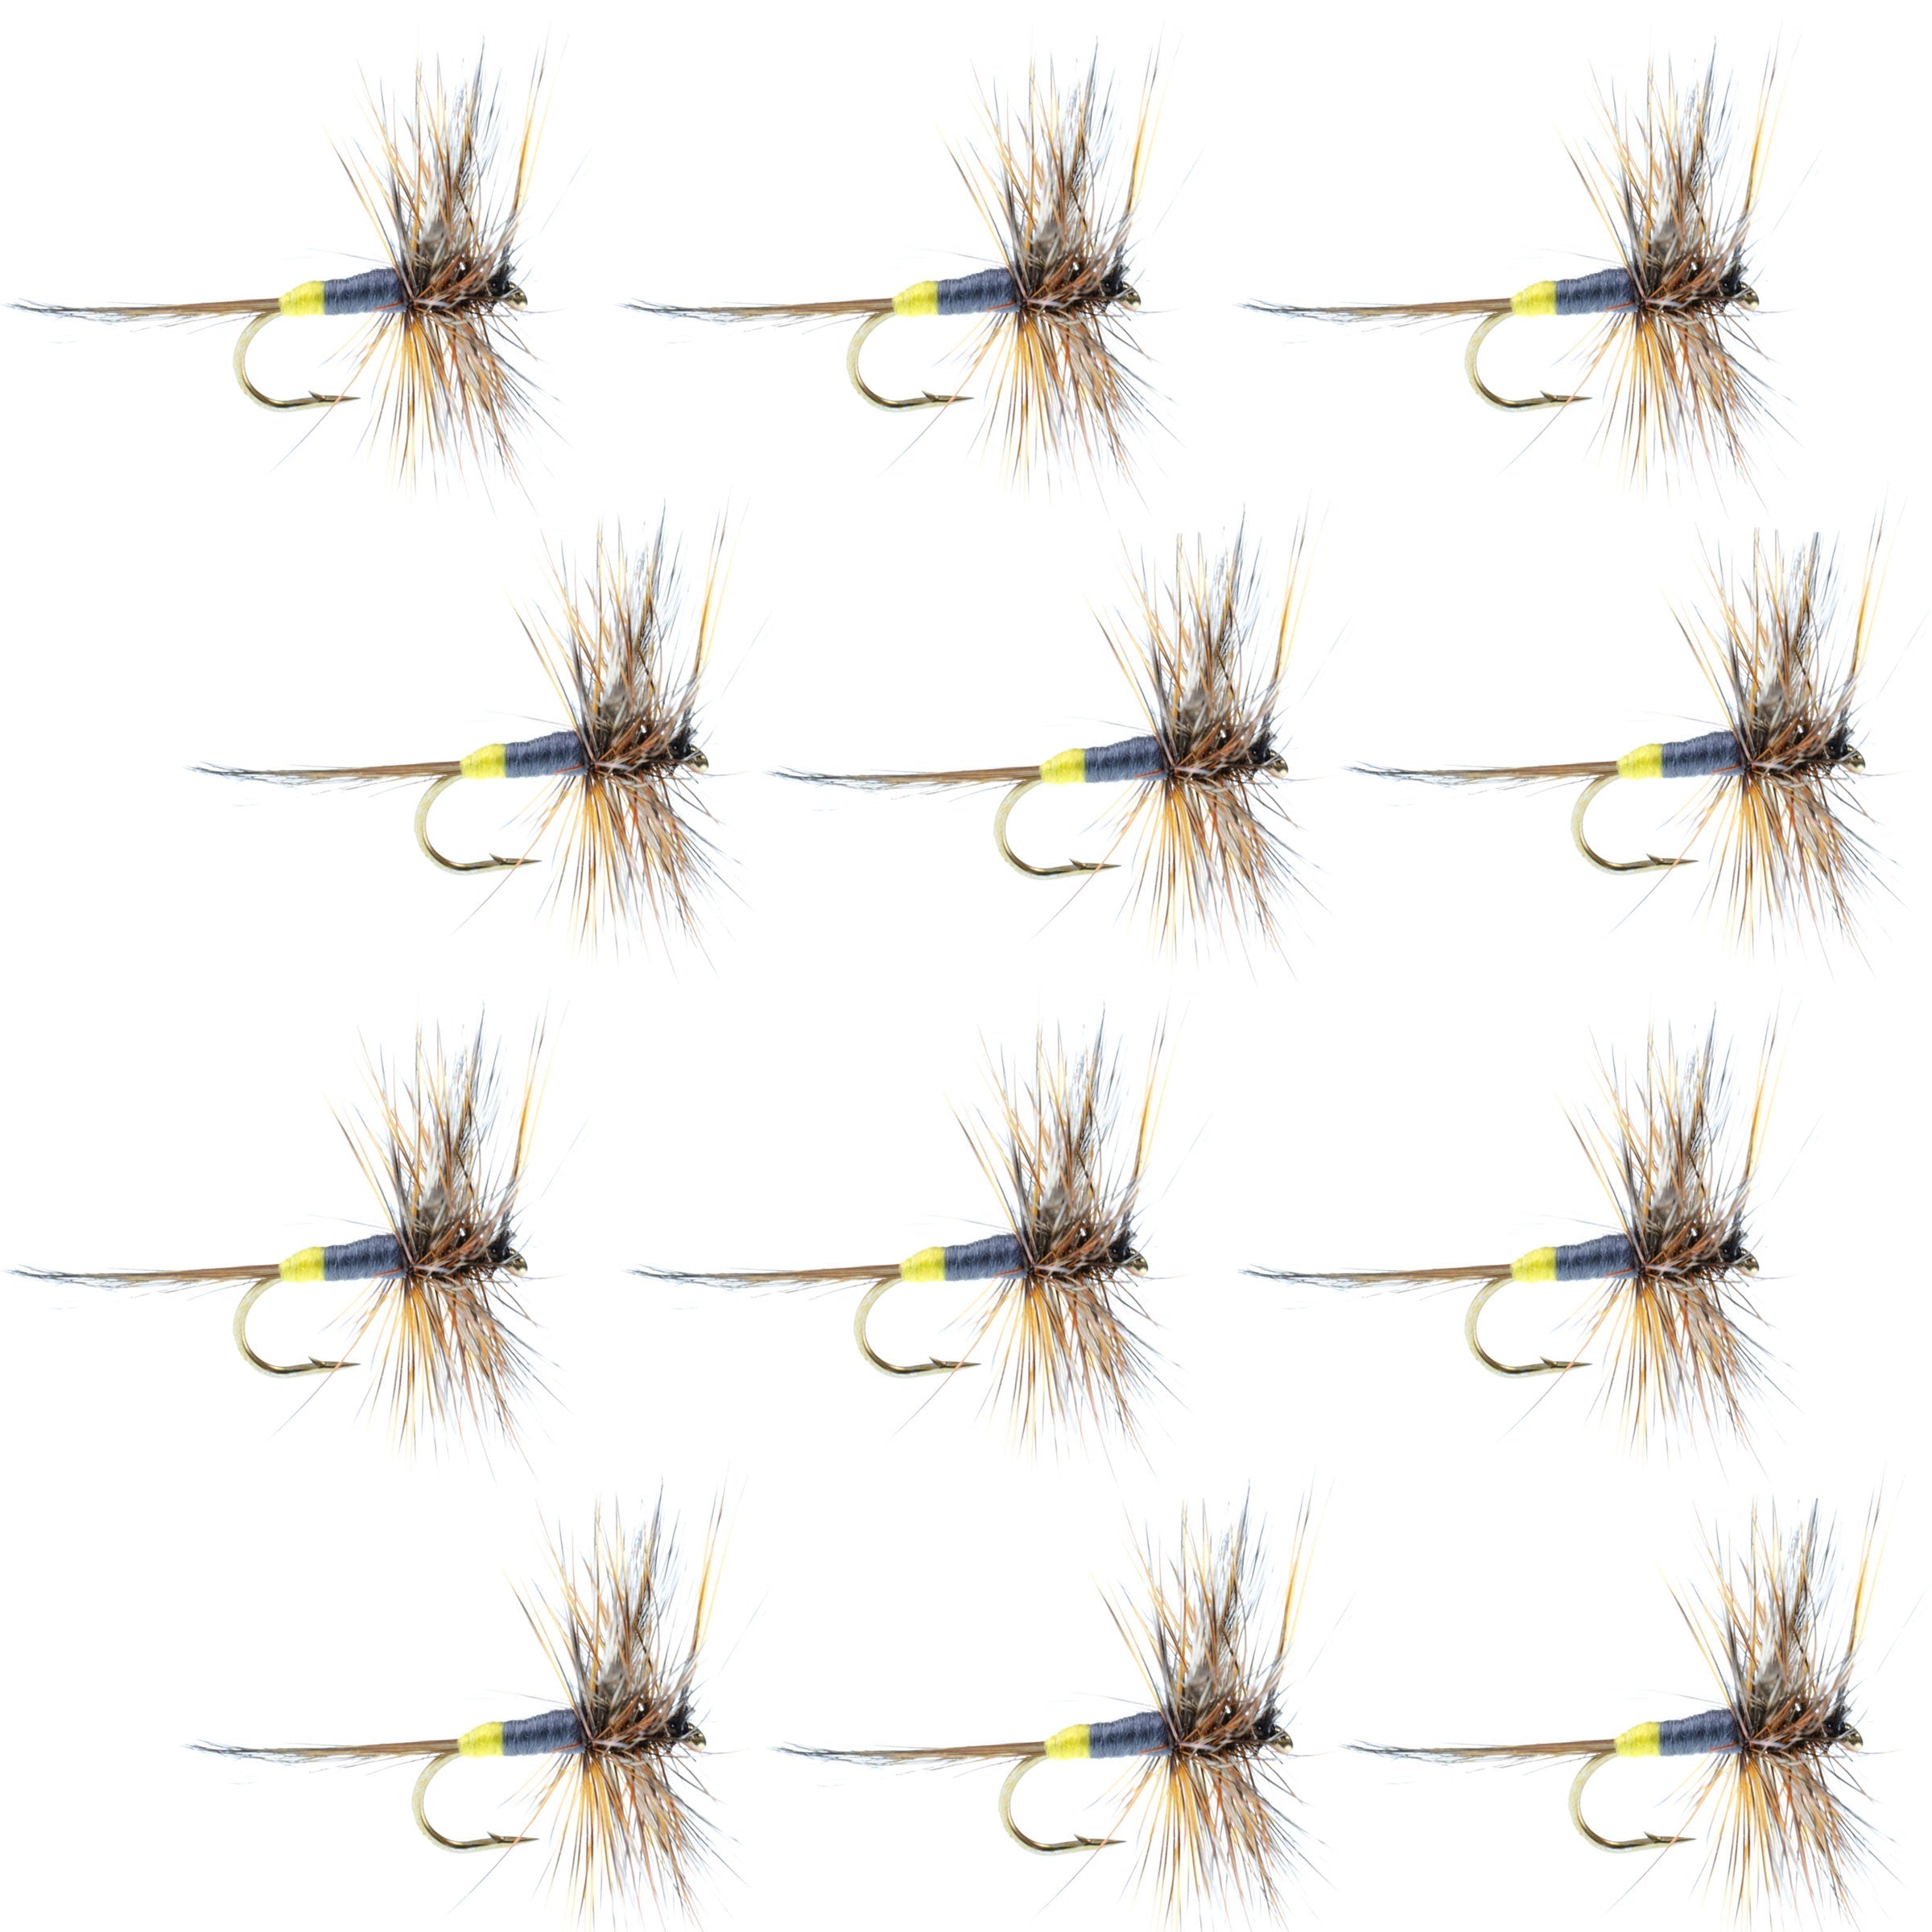 Adams Female Classic Dry Fly - 1 Dozen Flies - Hook Size 14